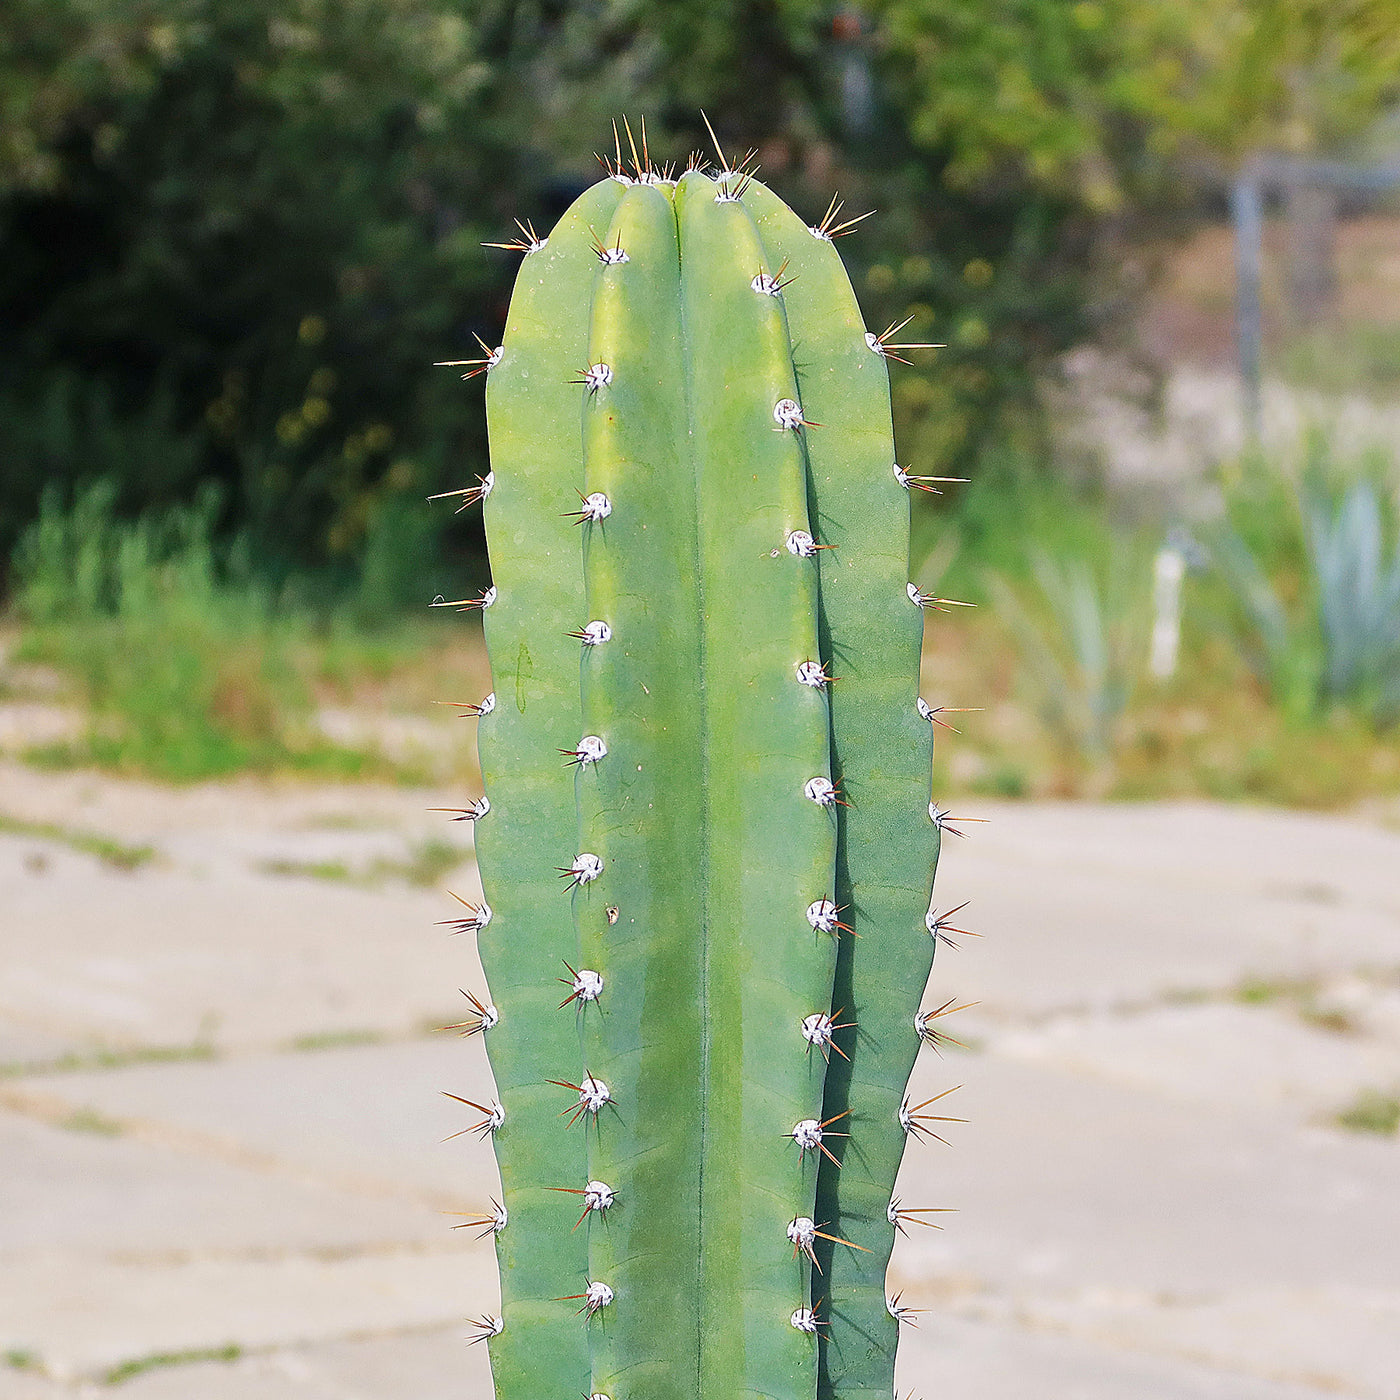 Hedge Cactus – Cereus hildmannianus